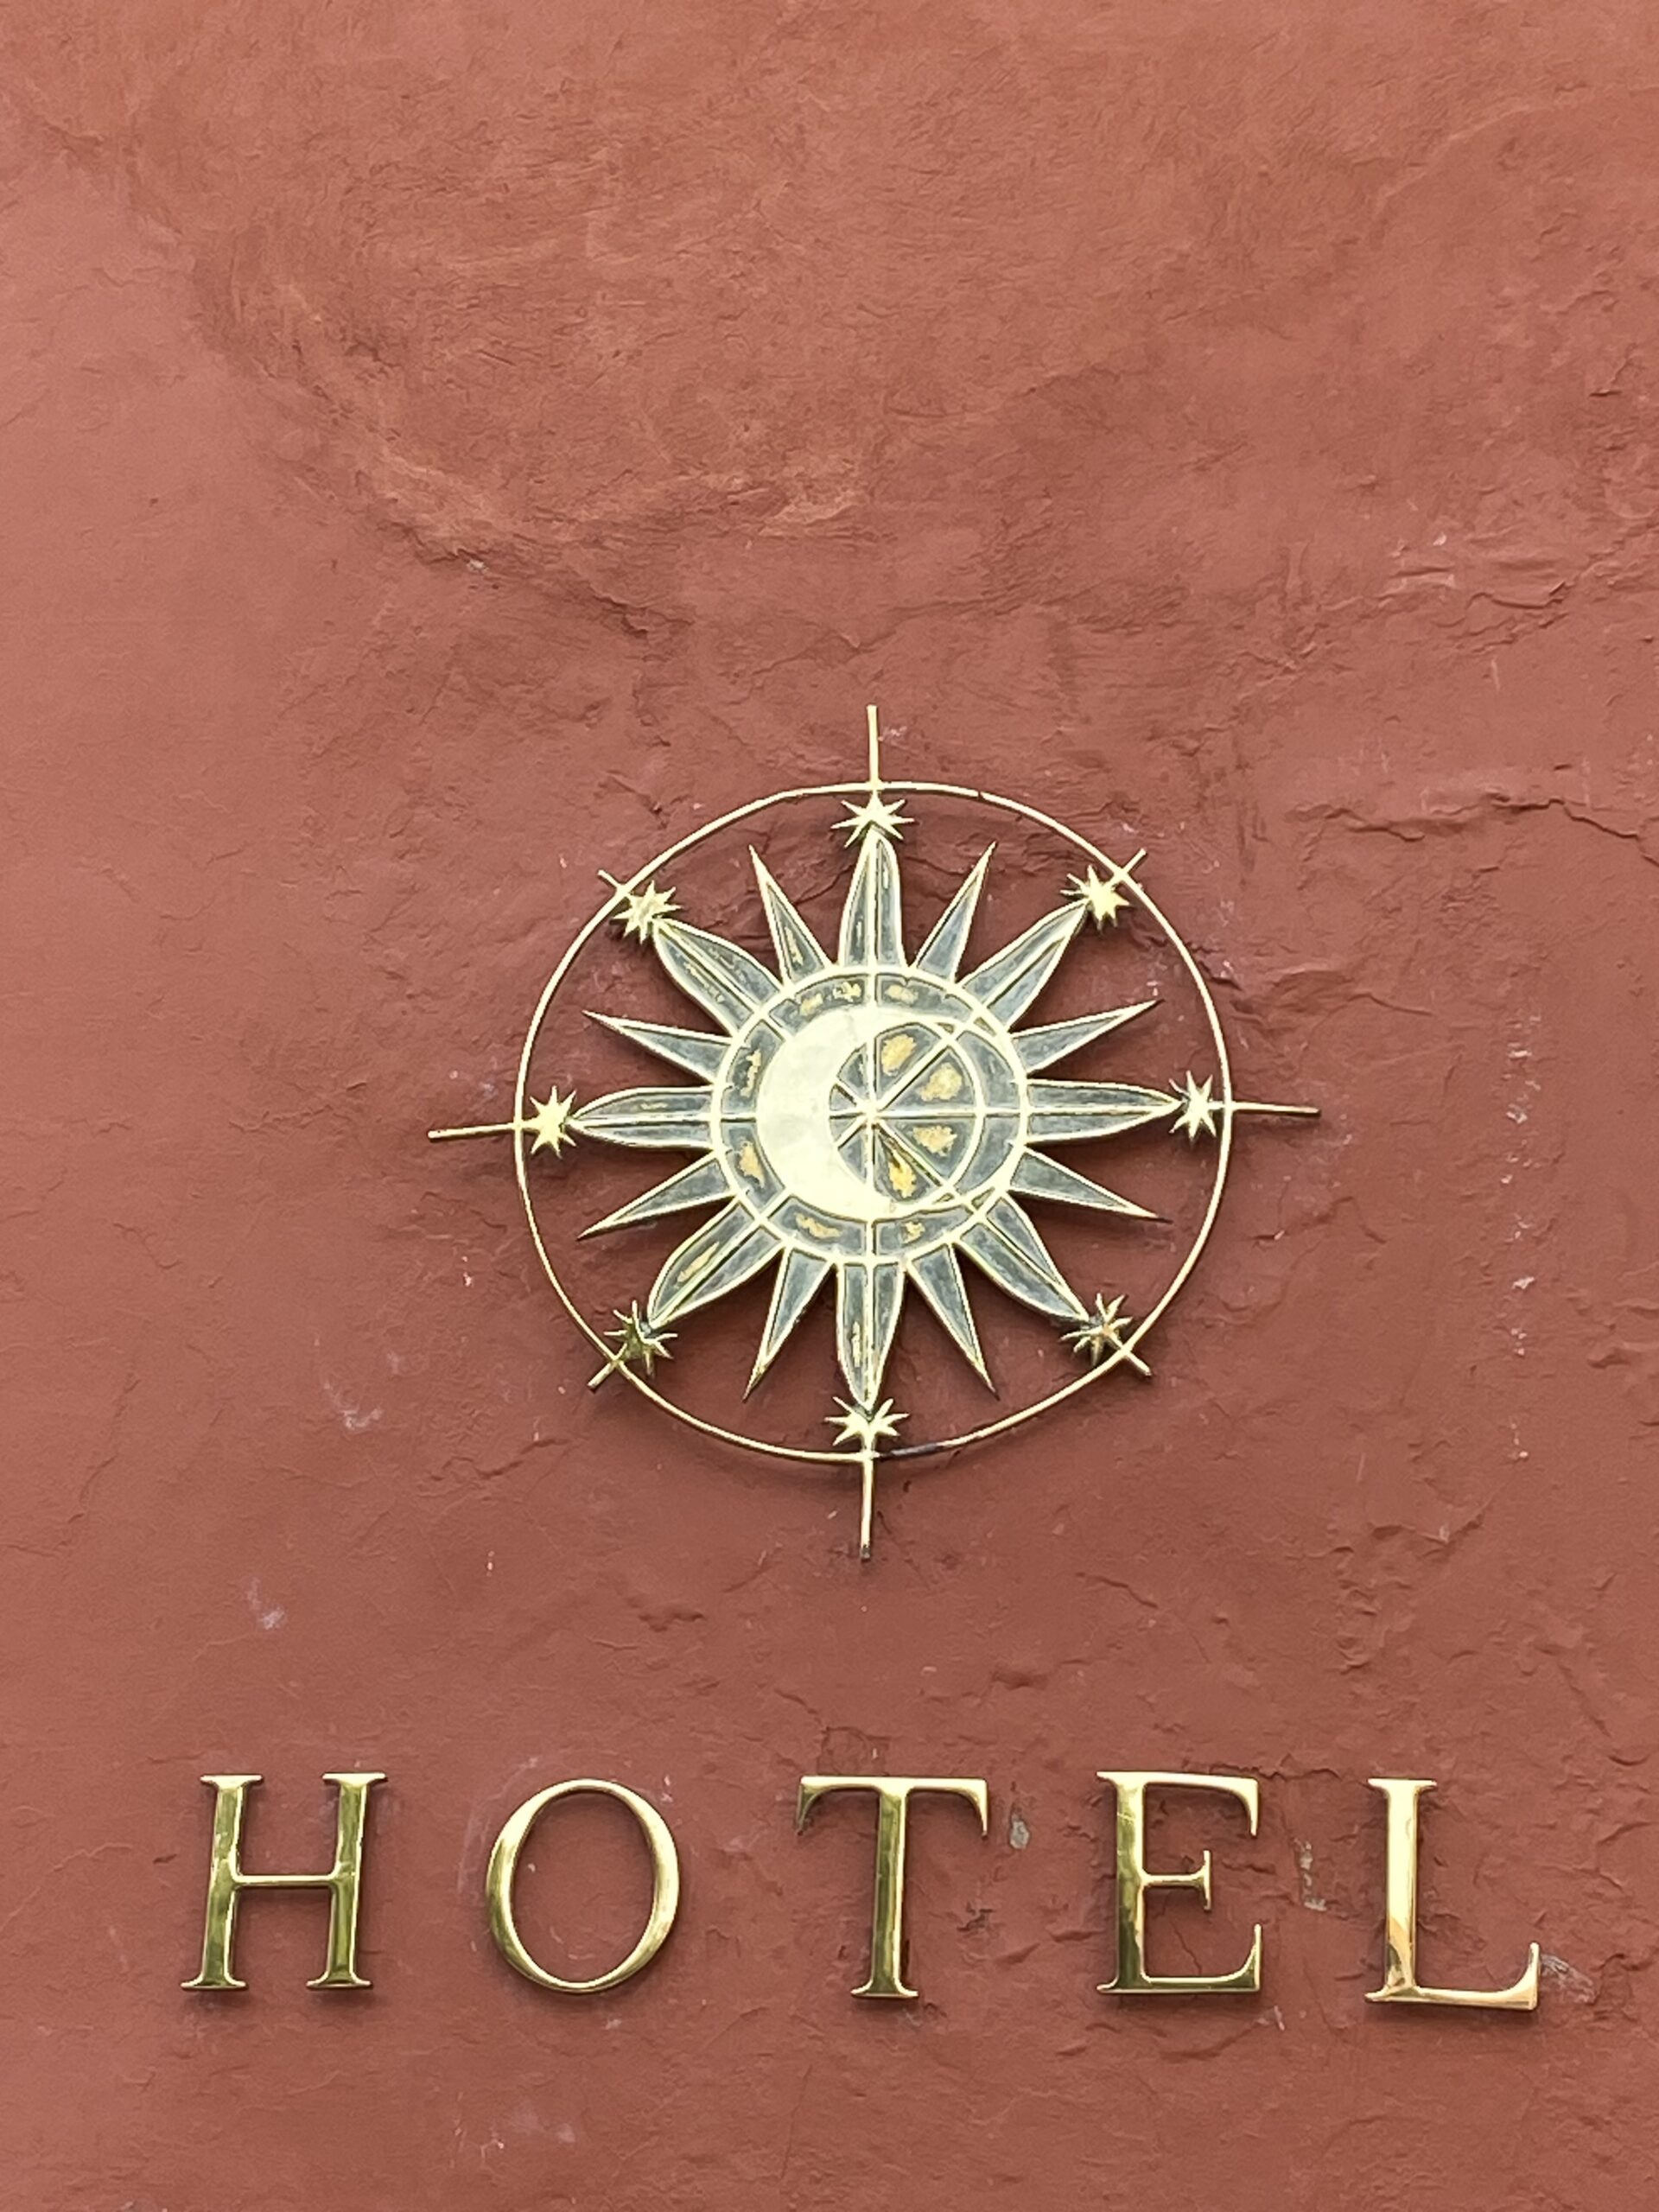 HOTELES EN CARTAGENA